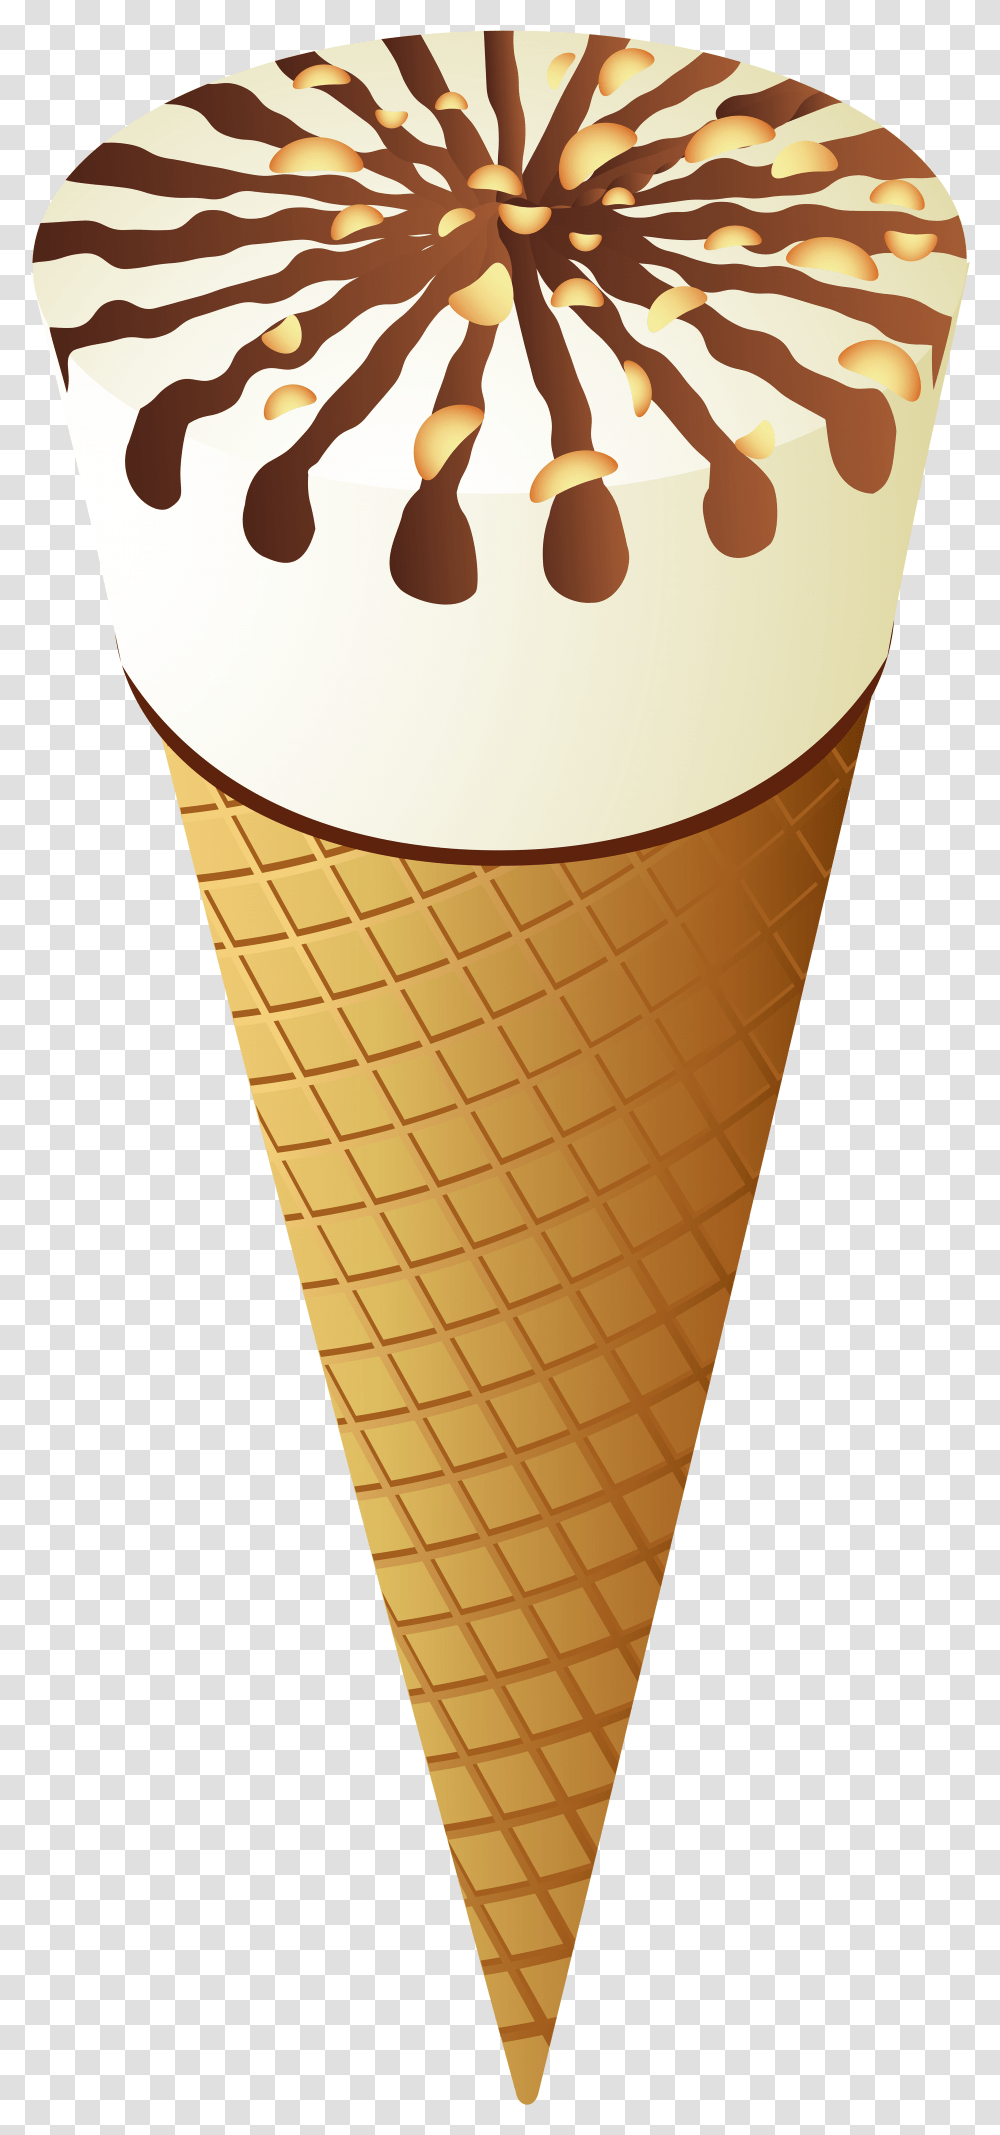 Ice Cream Cone Clip Art Ice Cream Cone, Dessert, Food, Creme Transparent Png